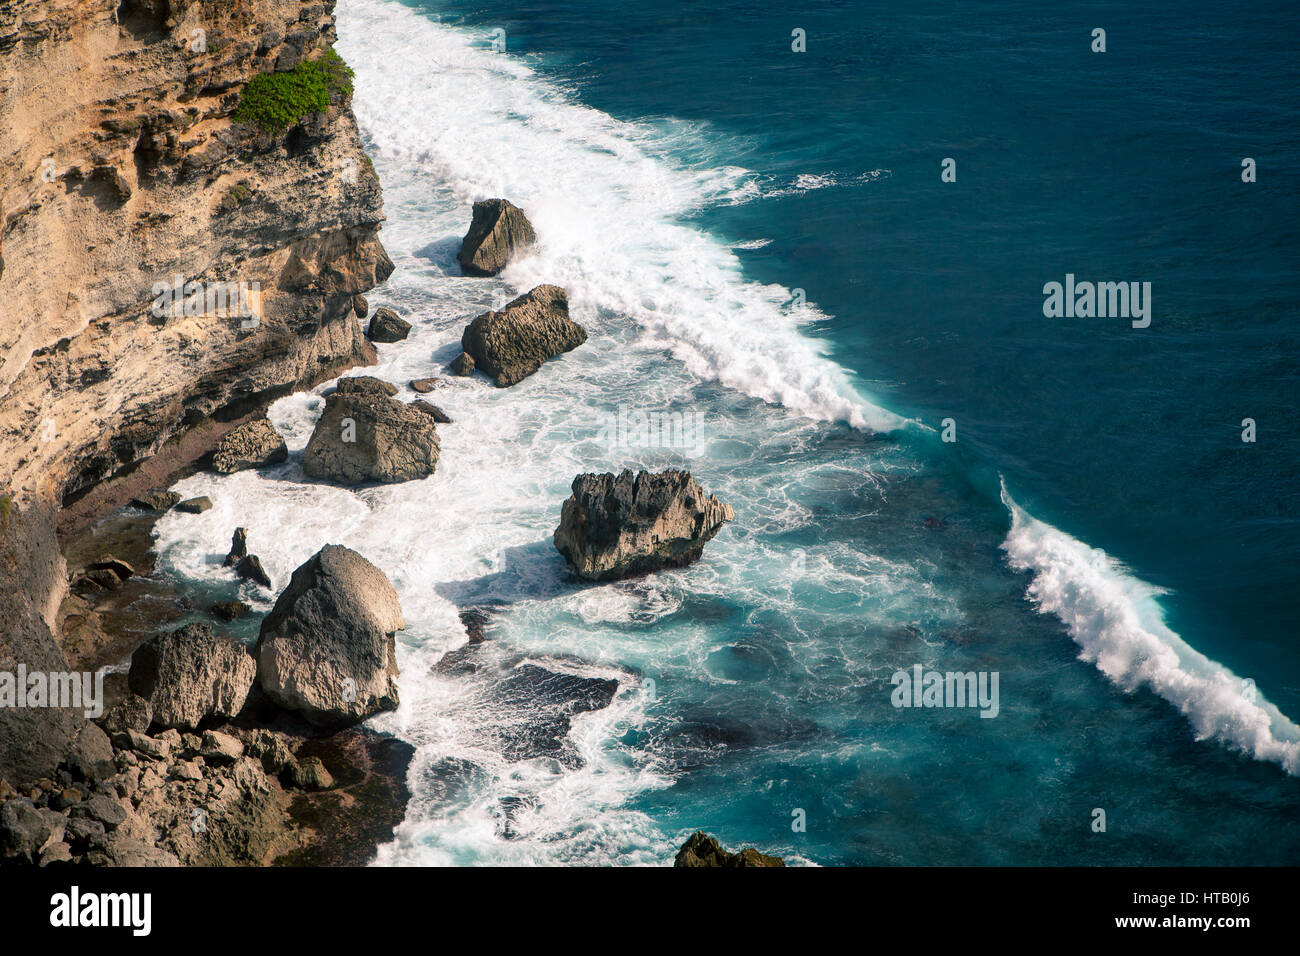 Les vagues de l'océan sur l'écrasement d'énormes rochers sur la plage par une journée ensoleillée. Bali Indonésie Banque D'Images